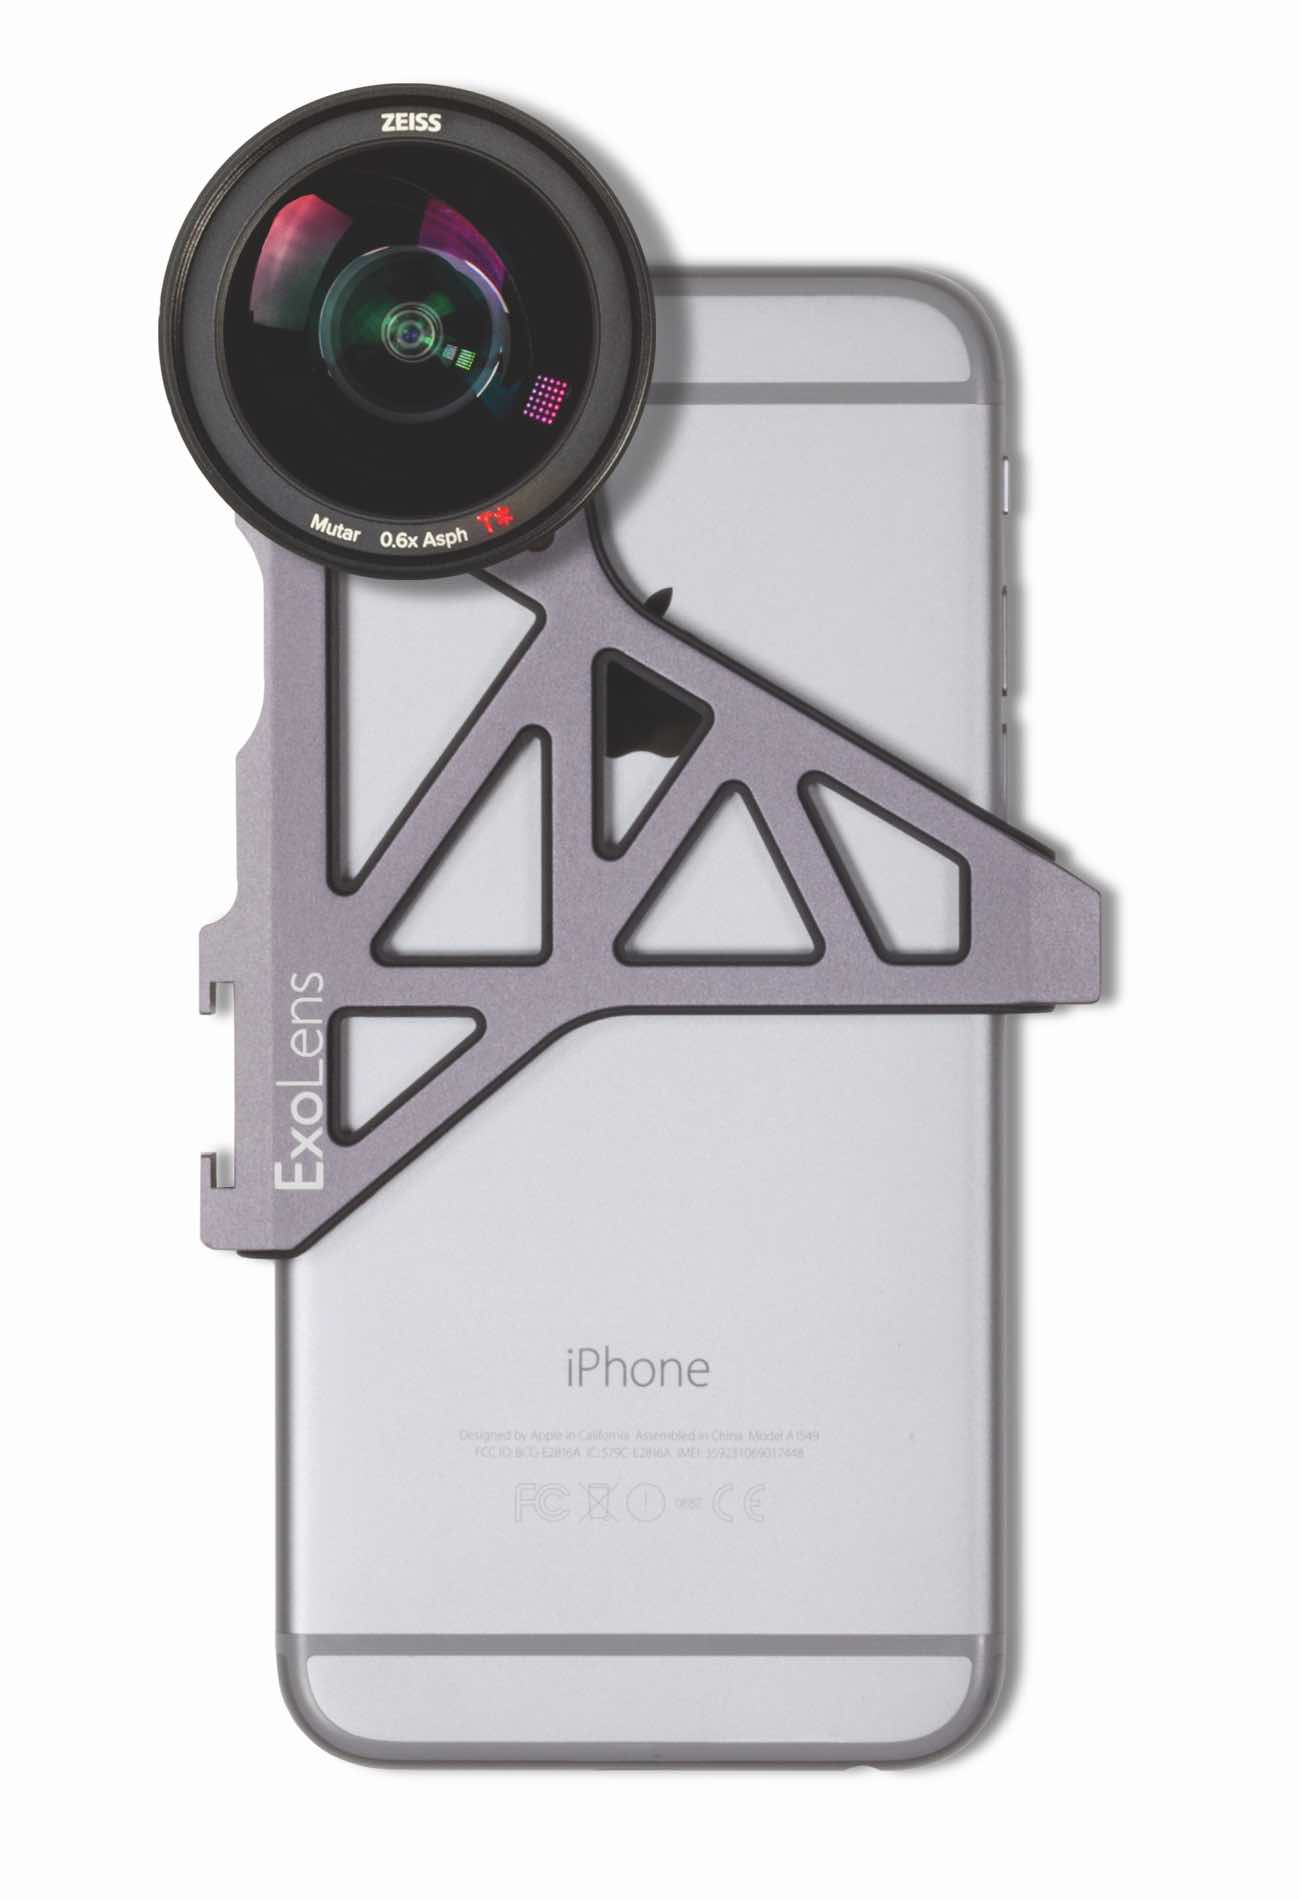 Die Vorsatzobjektive von ExoLens® mit ZEISS Optik werden mit einer Aluminium-Halterung am iPhone befestigt – hier das  Weitwinkelobjektiv ZEISS Mutar 0.6x Asph T*.